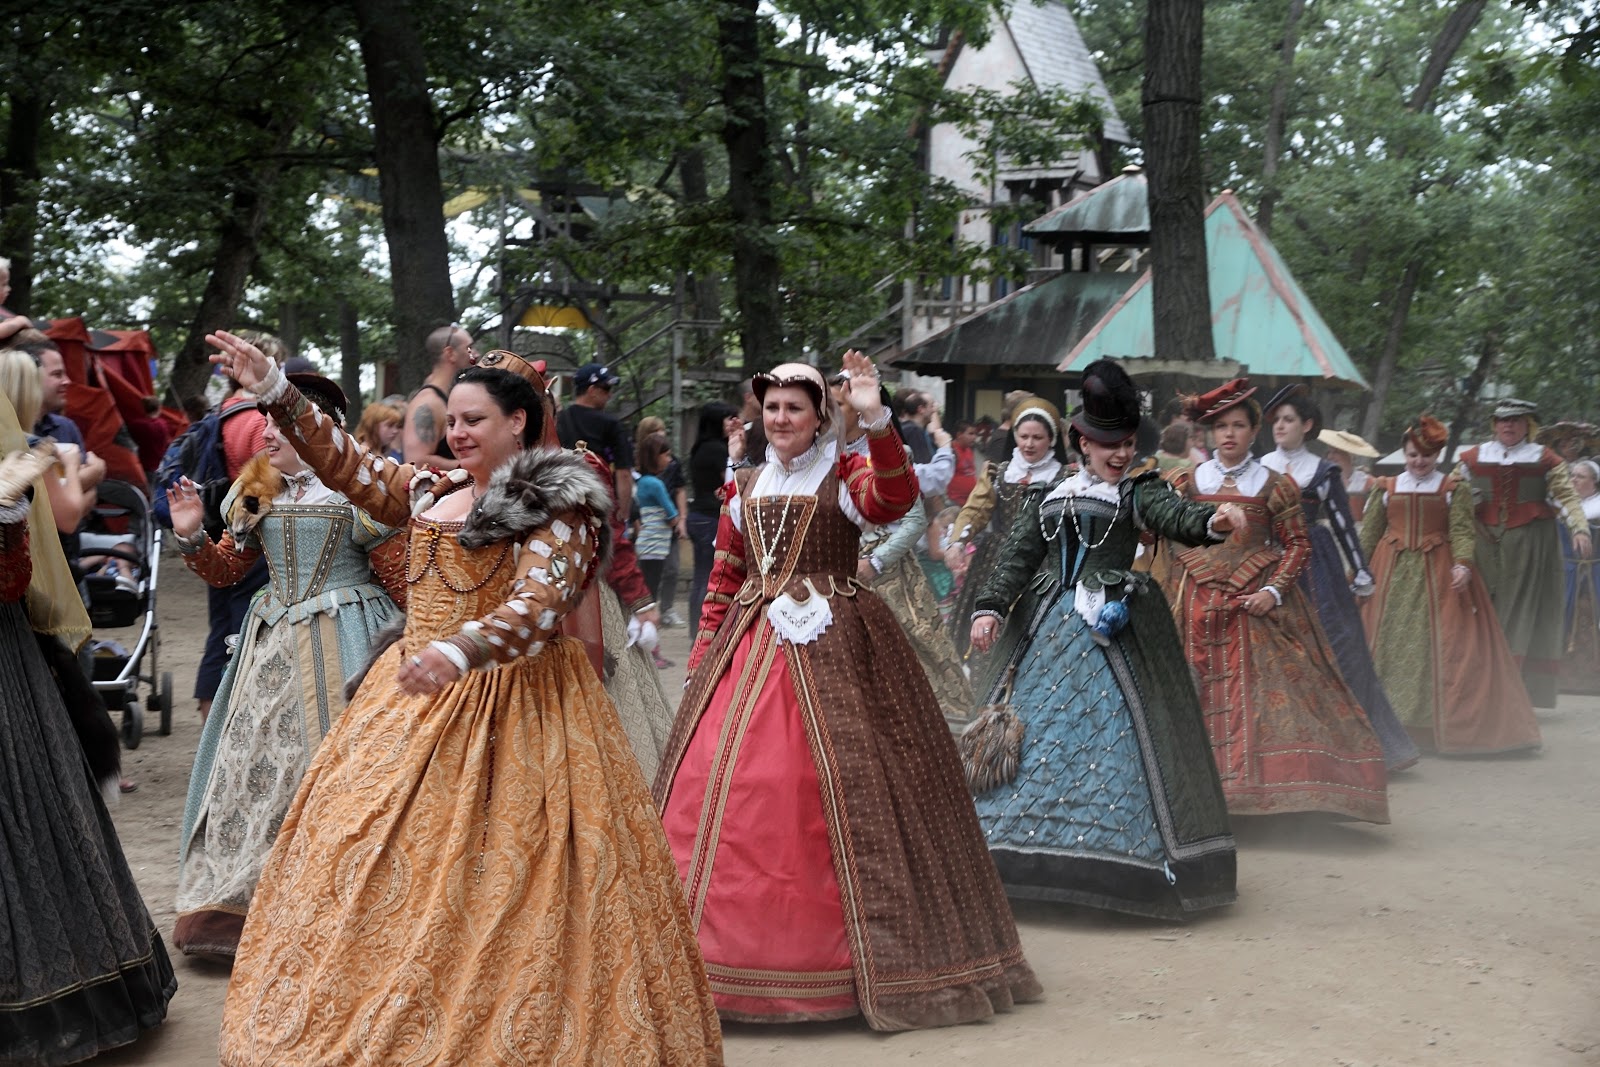 Renaissance Festival costumes